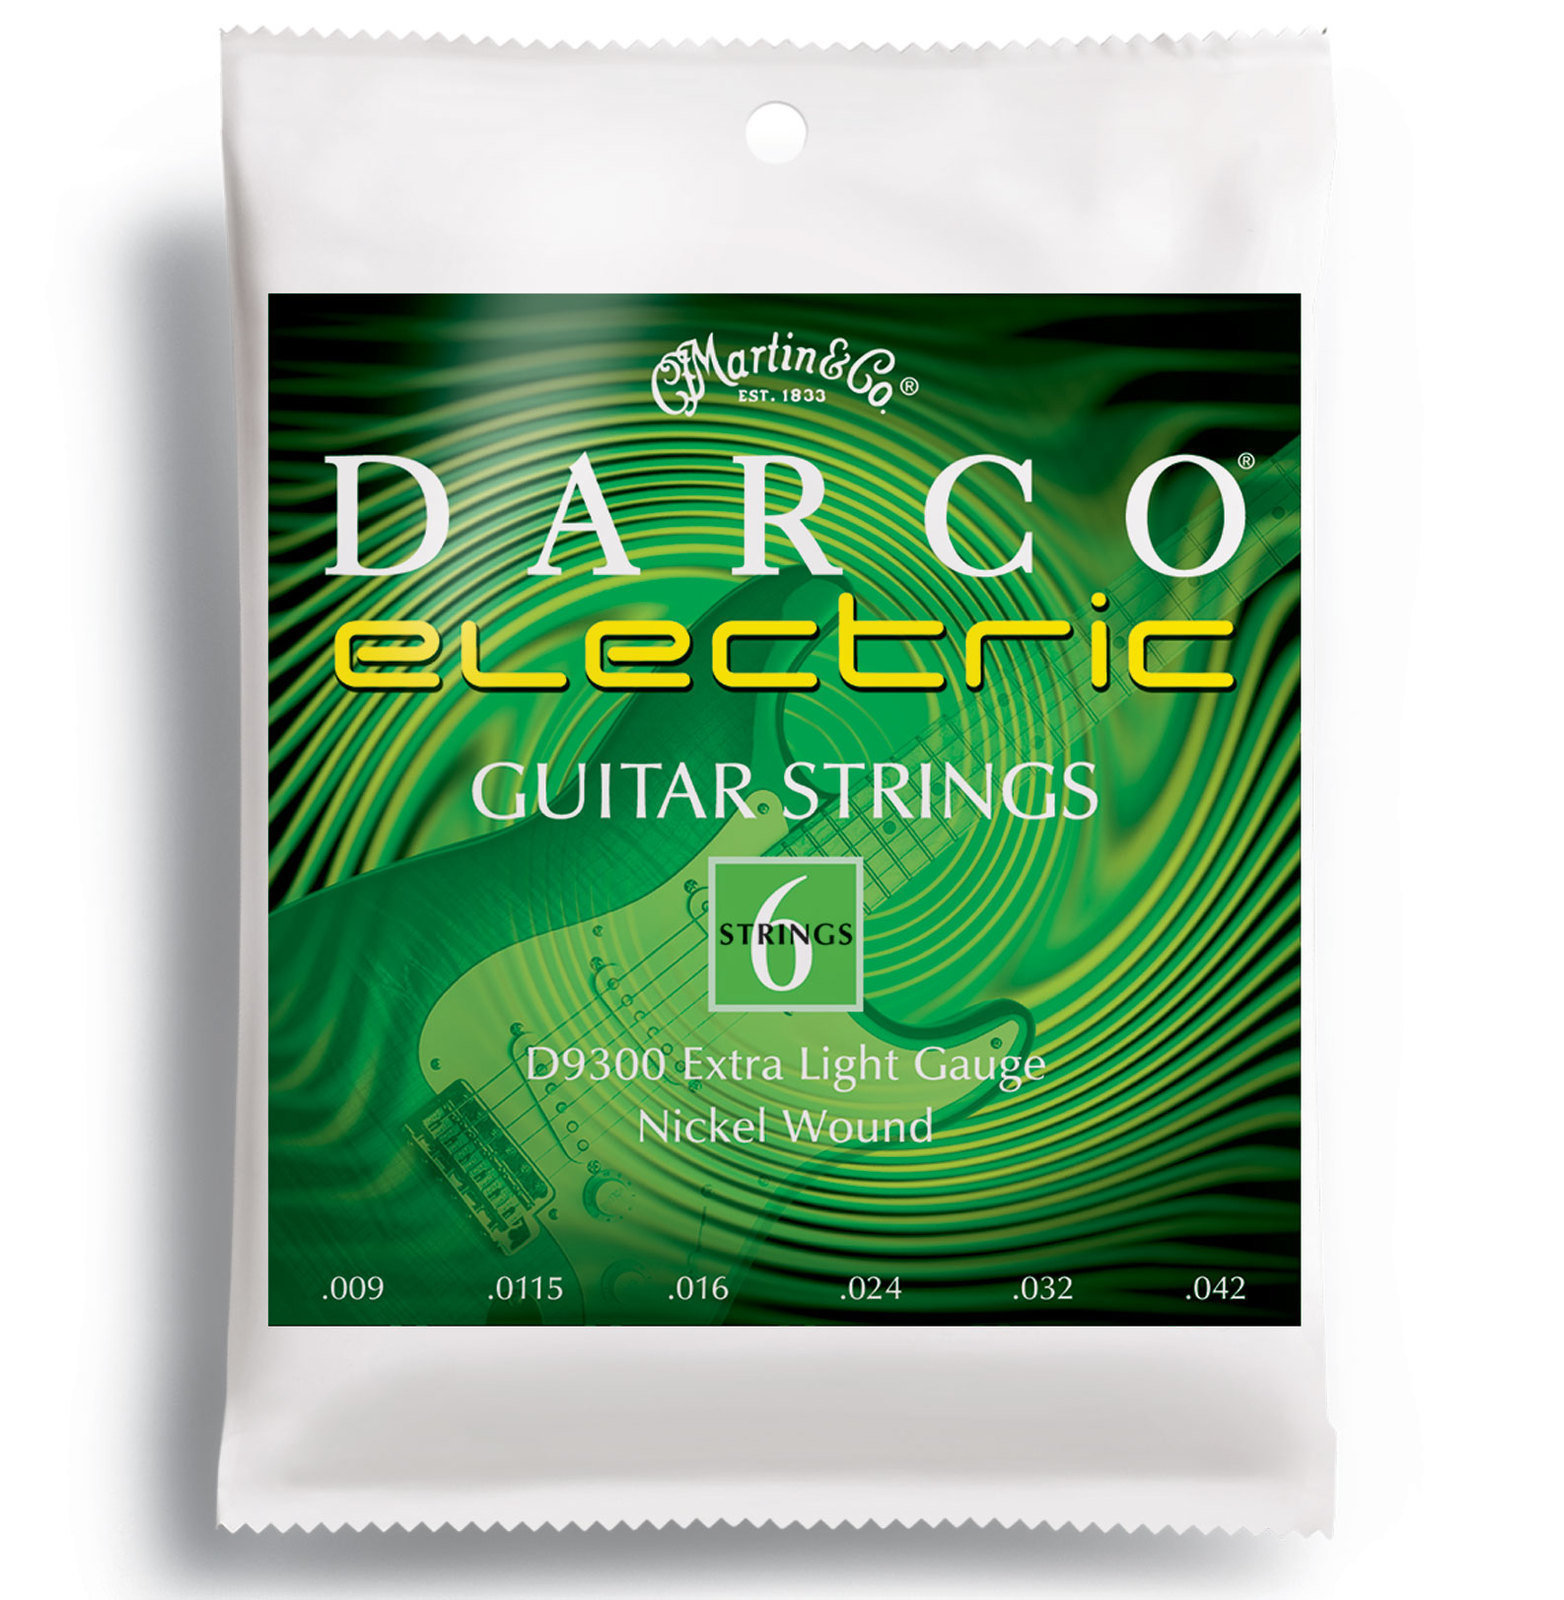 Cordes pour guitares électriques Martin D9300 Darco Electric Guitar Strings, Extra Light